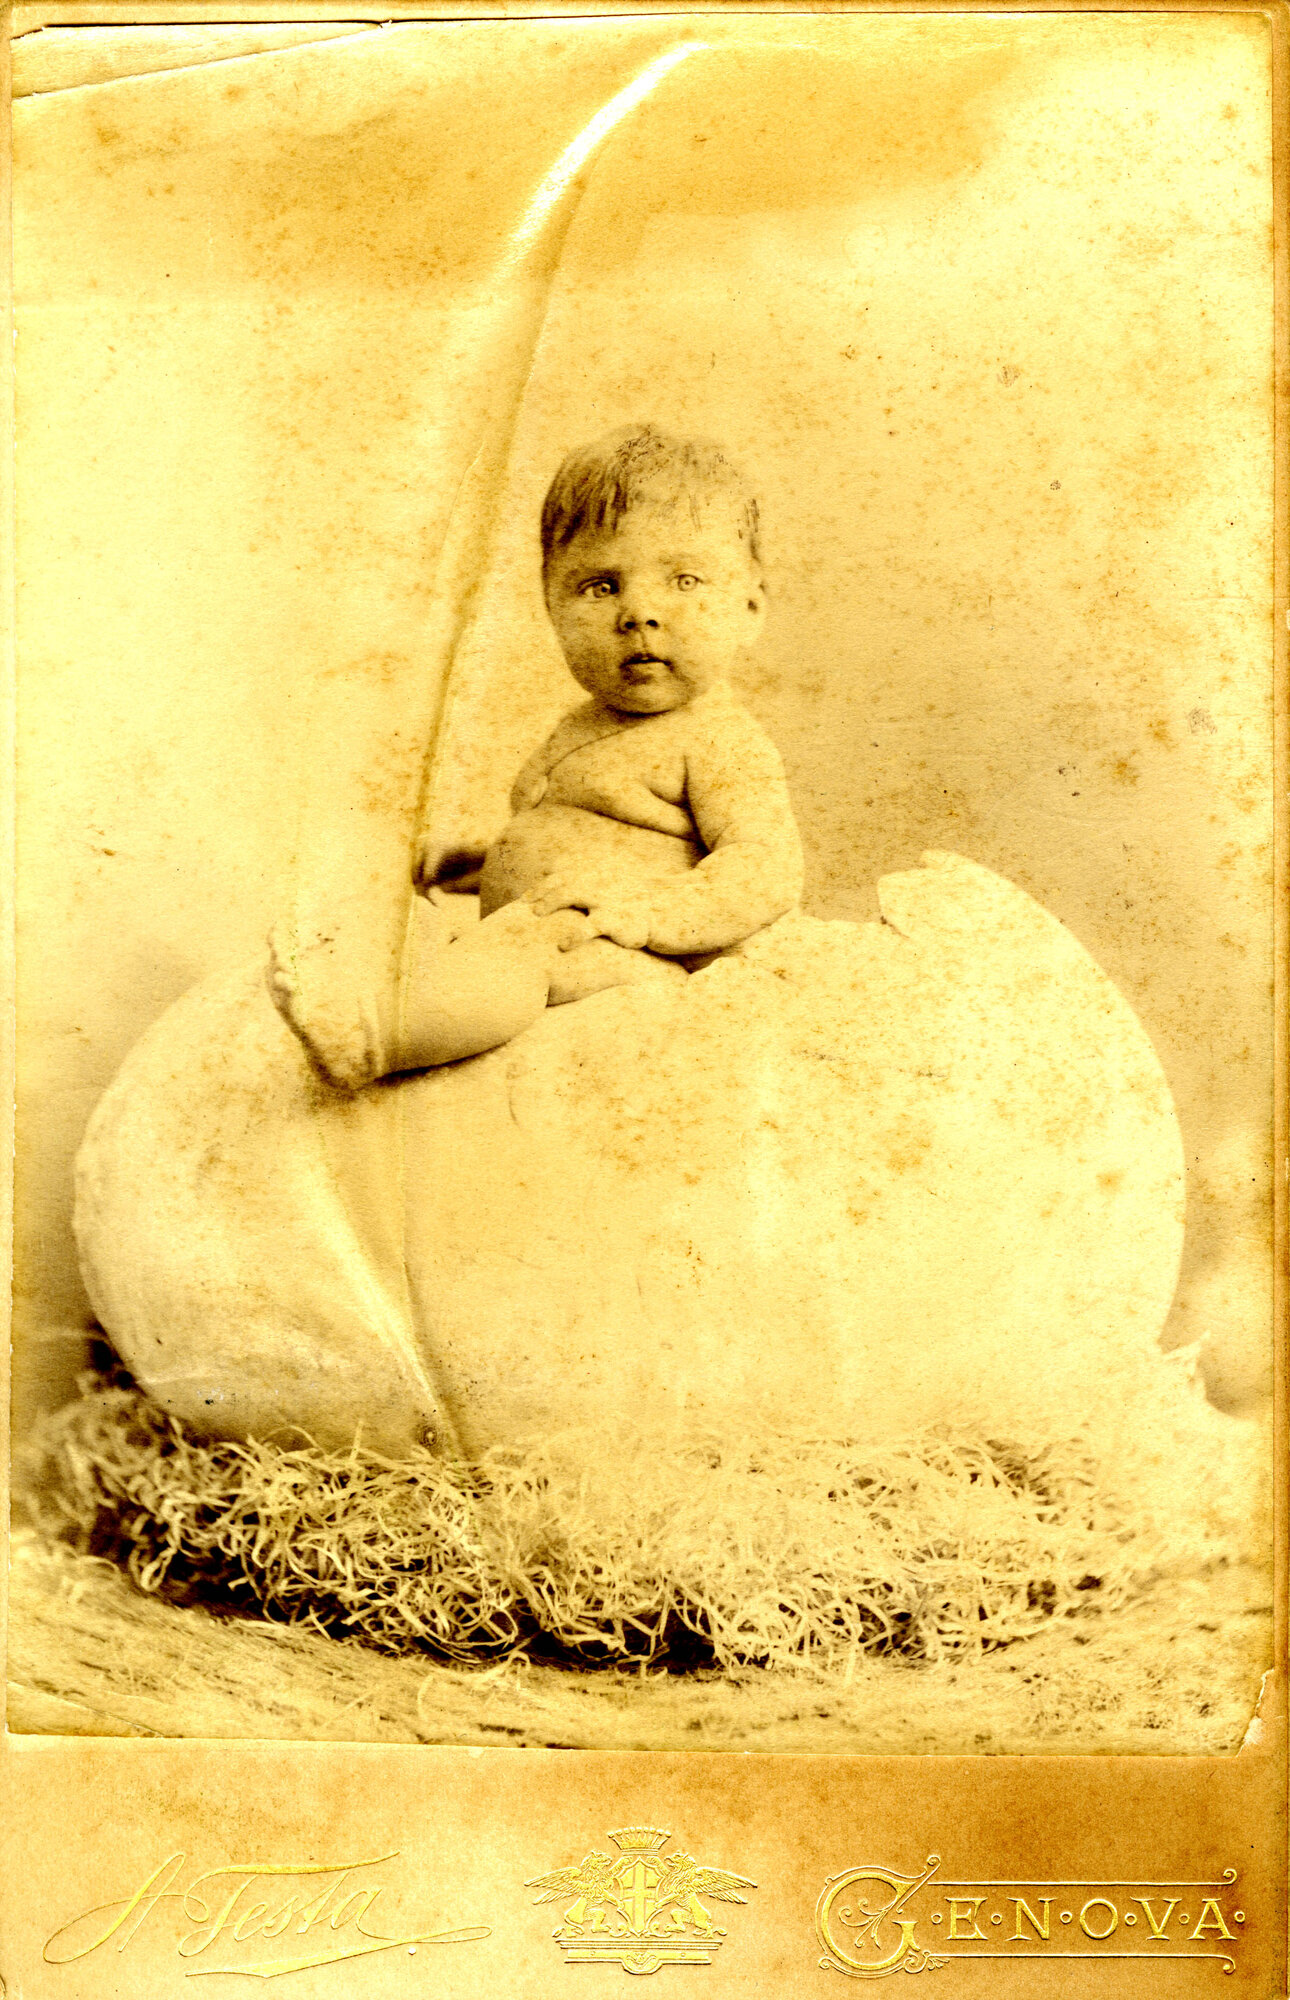 47568 - Ritratto di neonato dentro un uovo.jpg